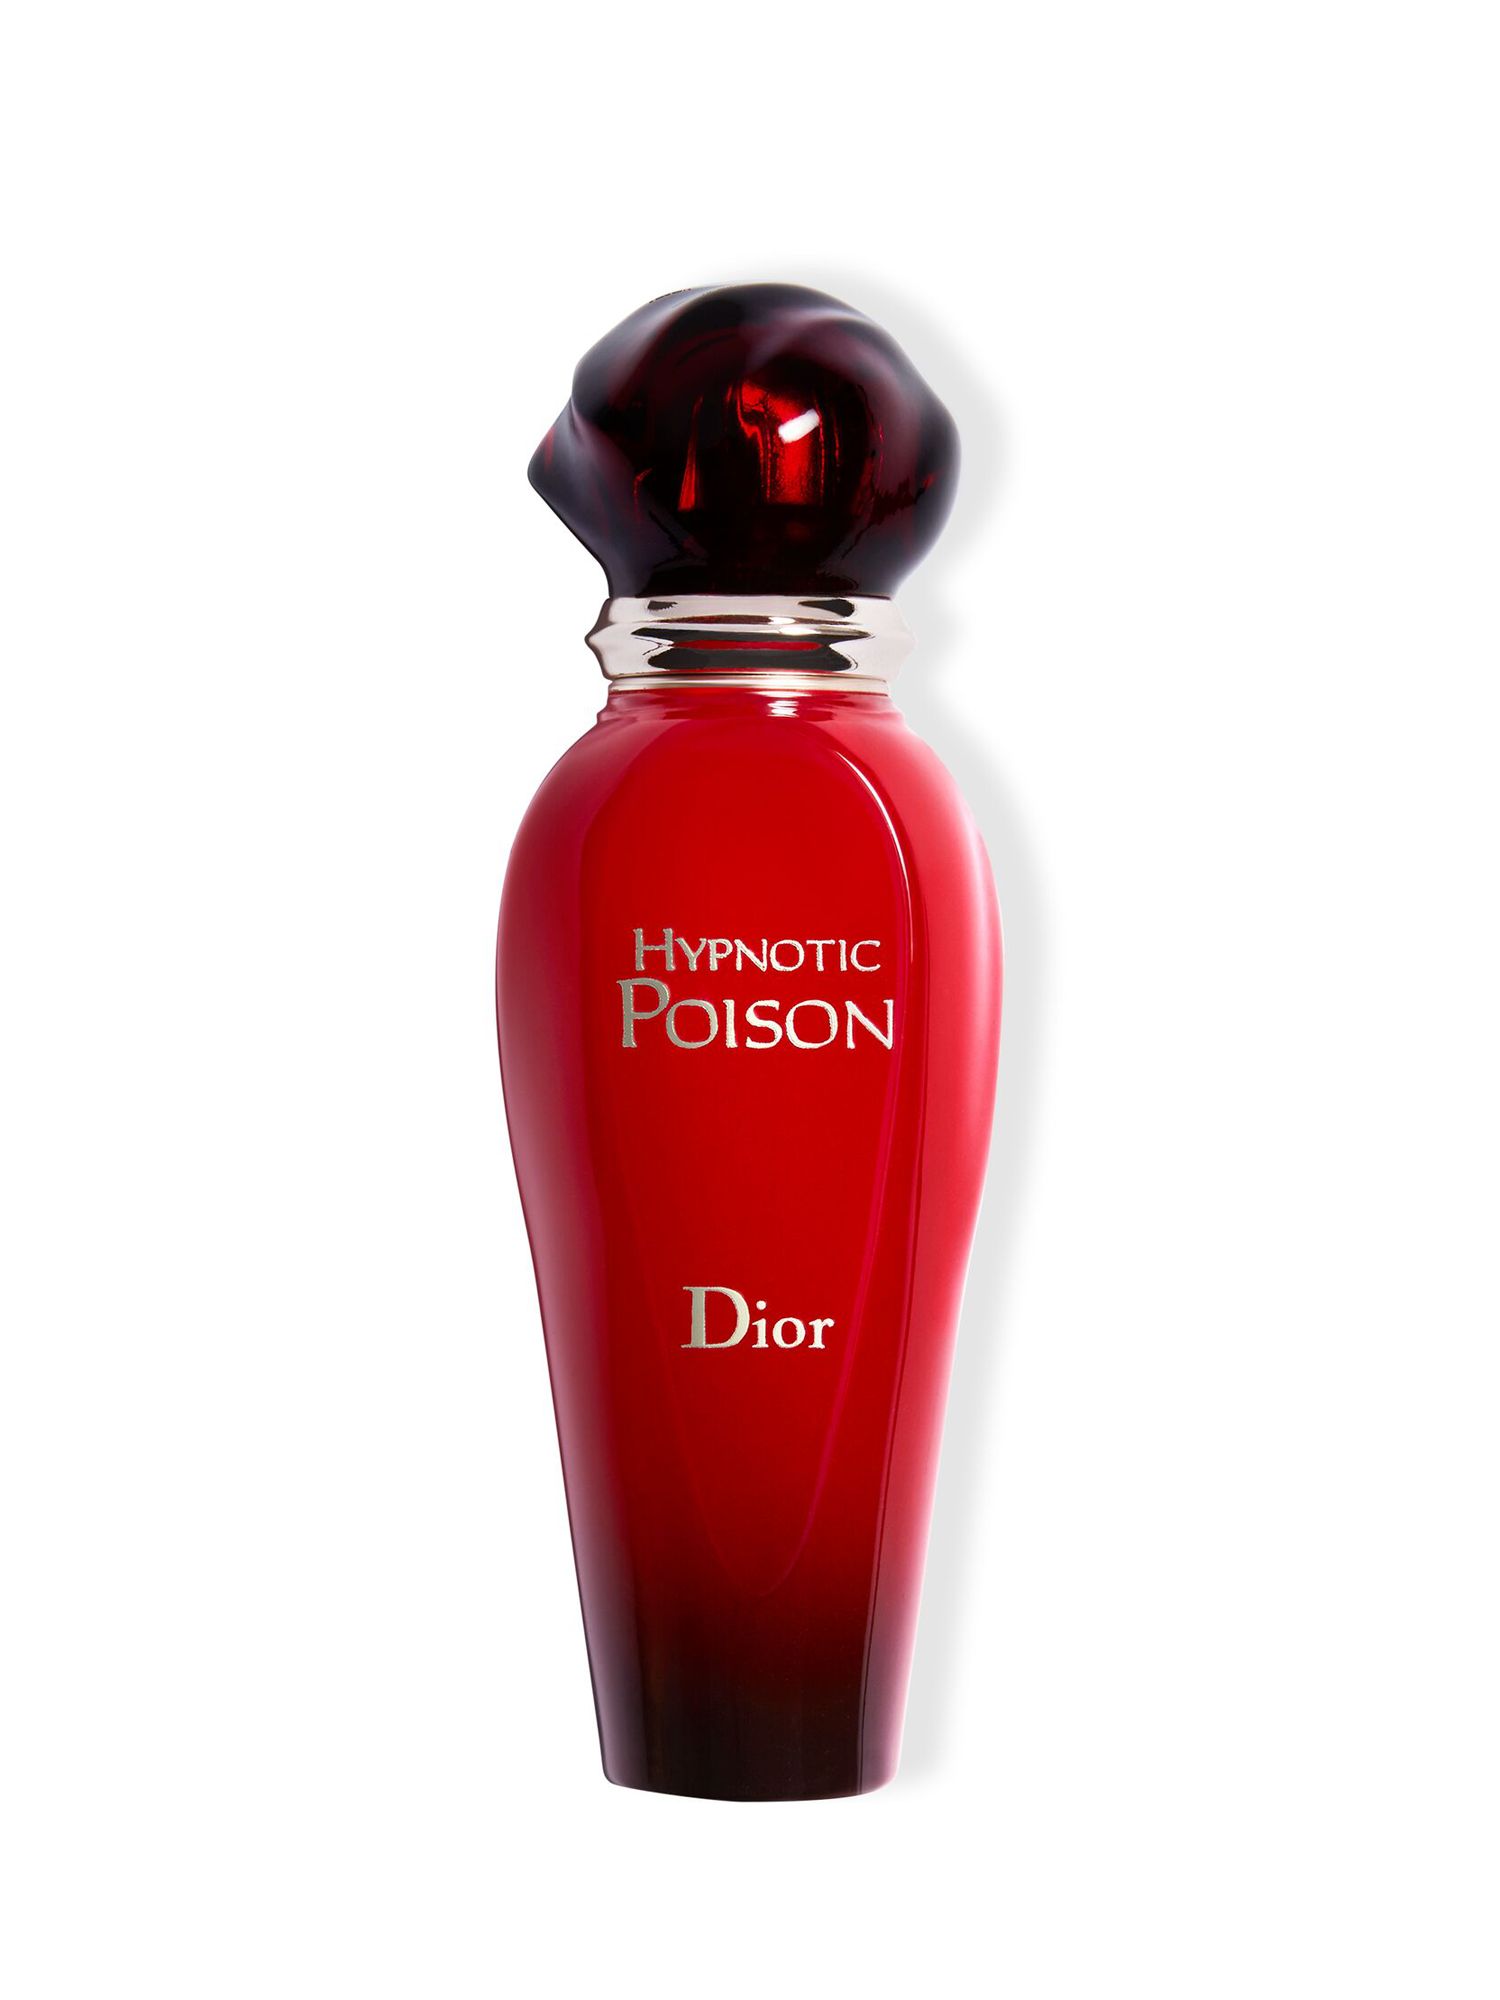 Dior Hypnotic Poison Eau De Toilette Roller Pearl ml At John Lewis Partners